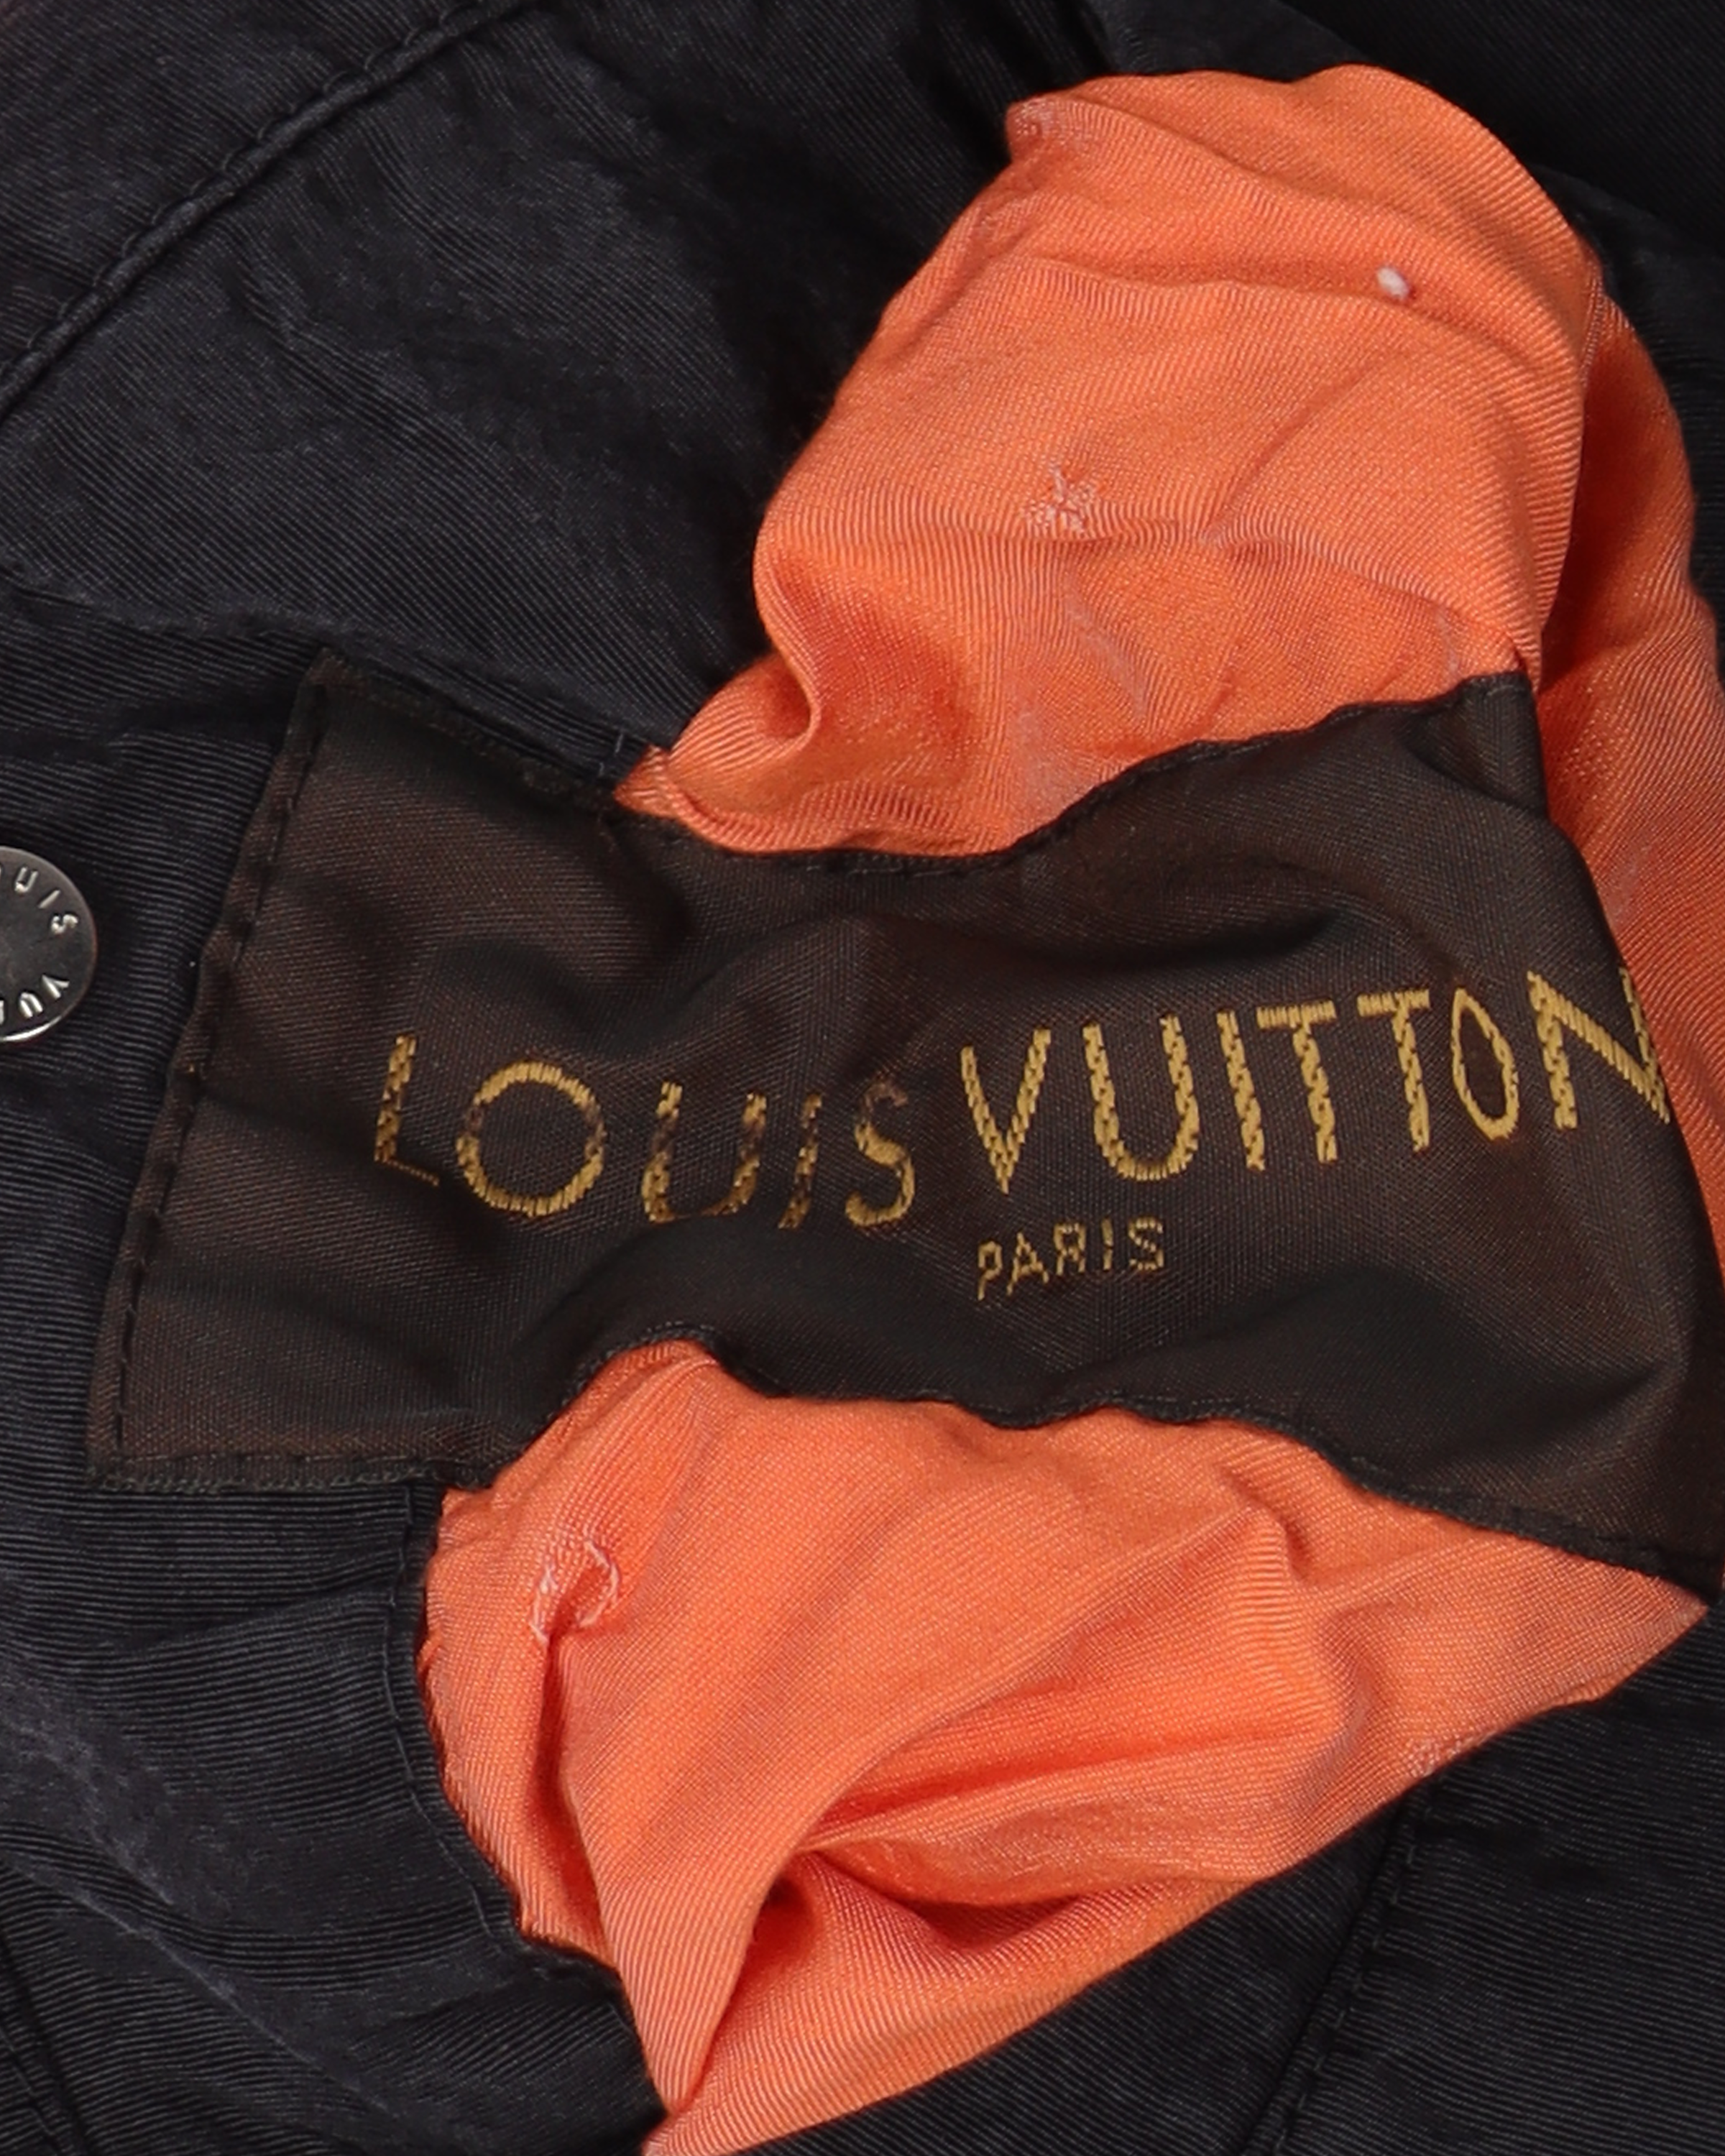 Louis Vuitton Paris Volez Voguez Voyagez Reversible Bomber Jacket